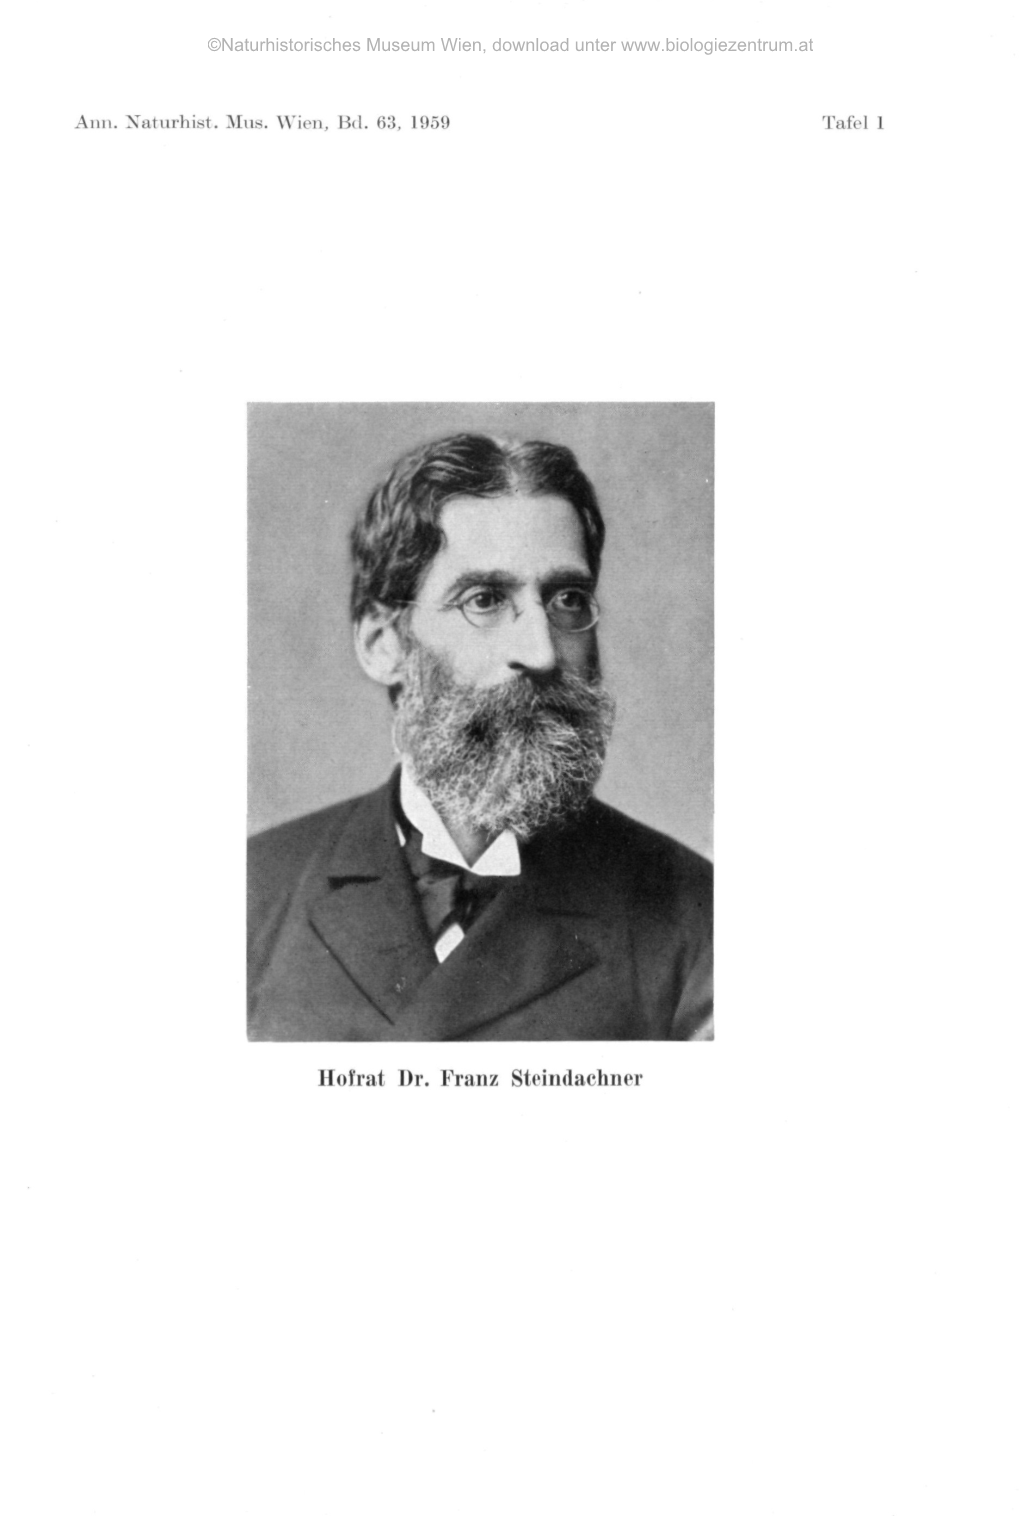 Hofrat Dr. Franz Steindachner